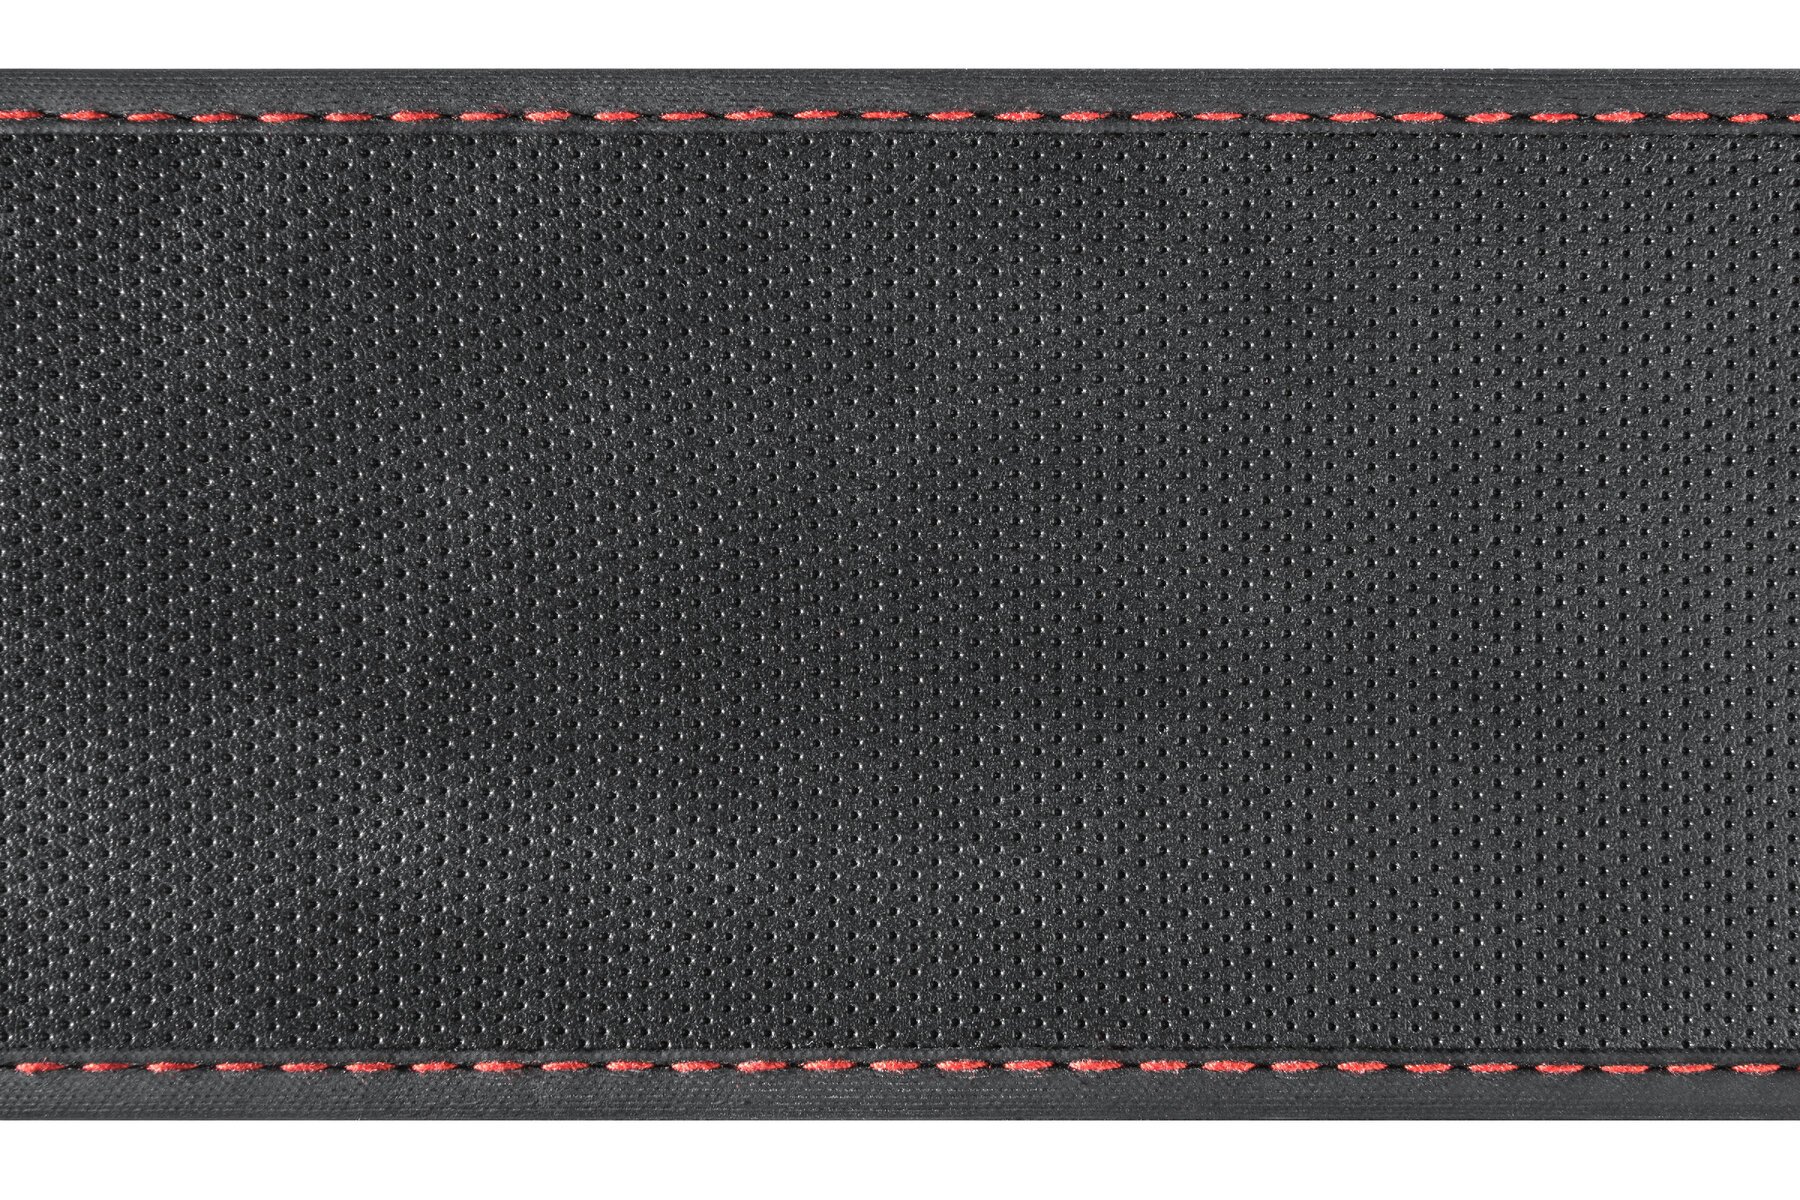 Stuurwielhoes Soft Grip Classy - 38 cm zwart-rood, auto stuurwielhoes, stuurwielbeschermer, stuurwielaccessoires met anti-slip laag, universele maat